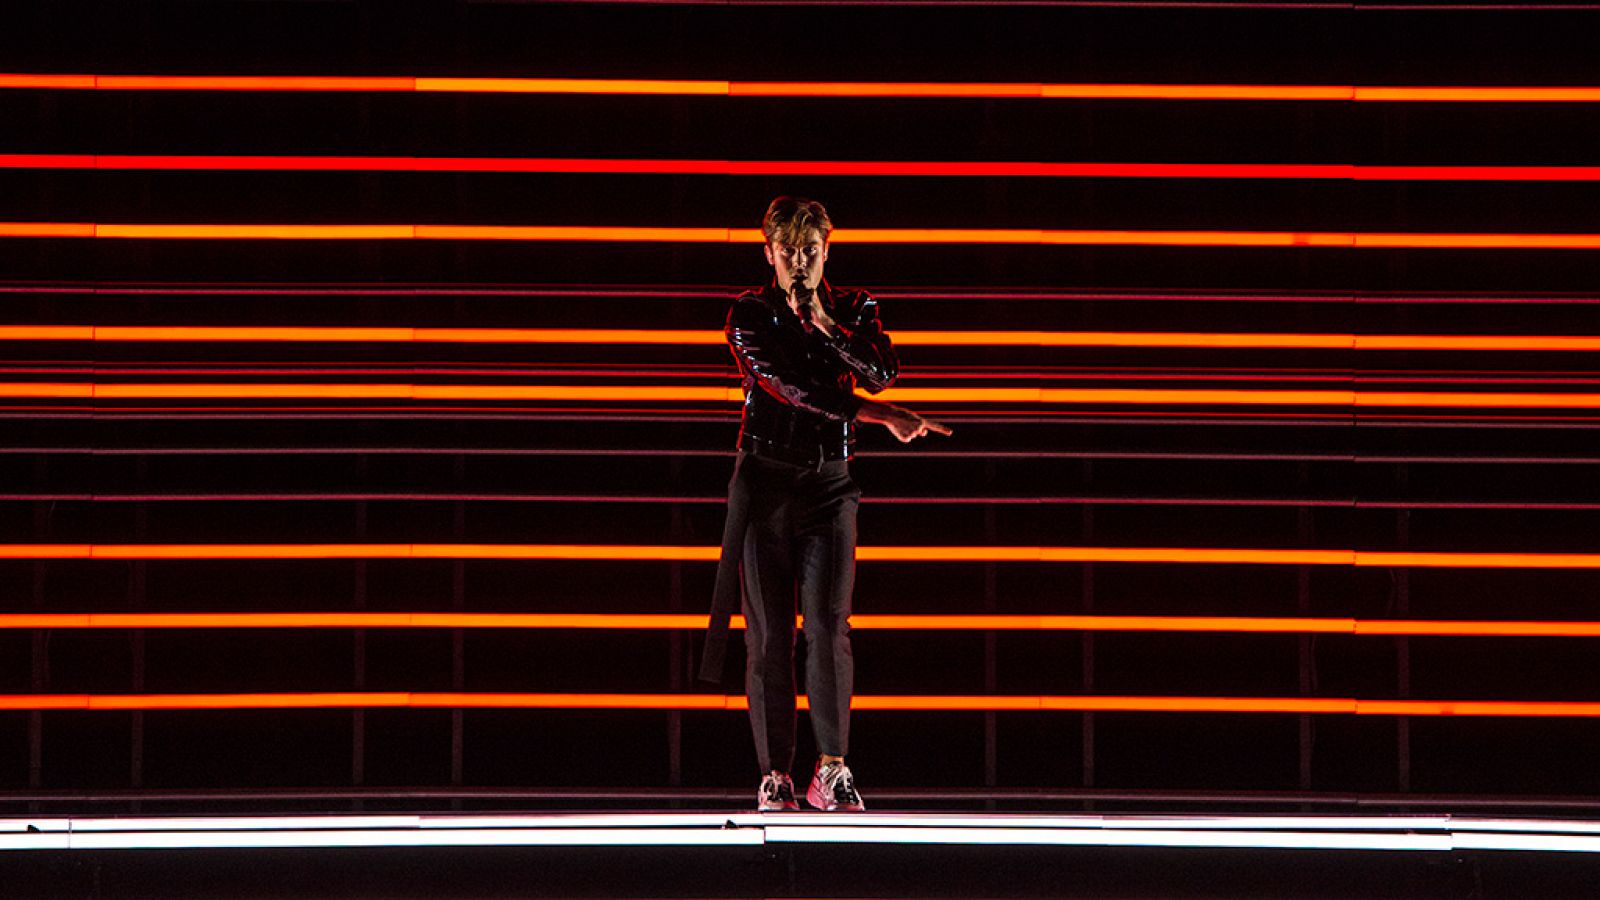 Eurovisión - Suecia: Benjamin Ingrosso canta "Dance you off" en la final de Eurovisión 2018